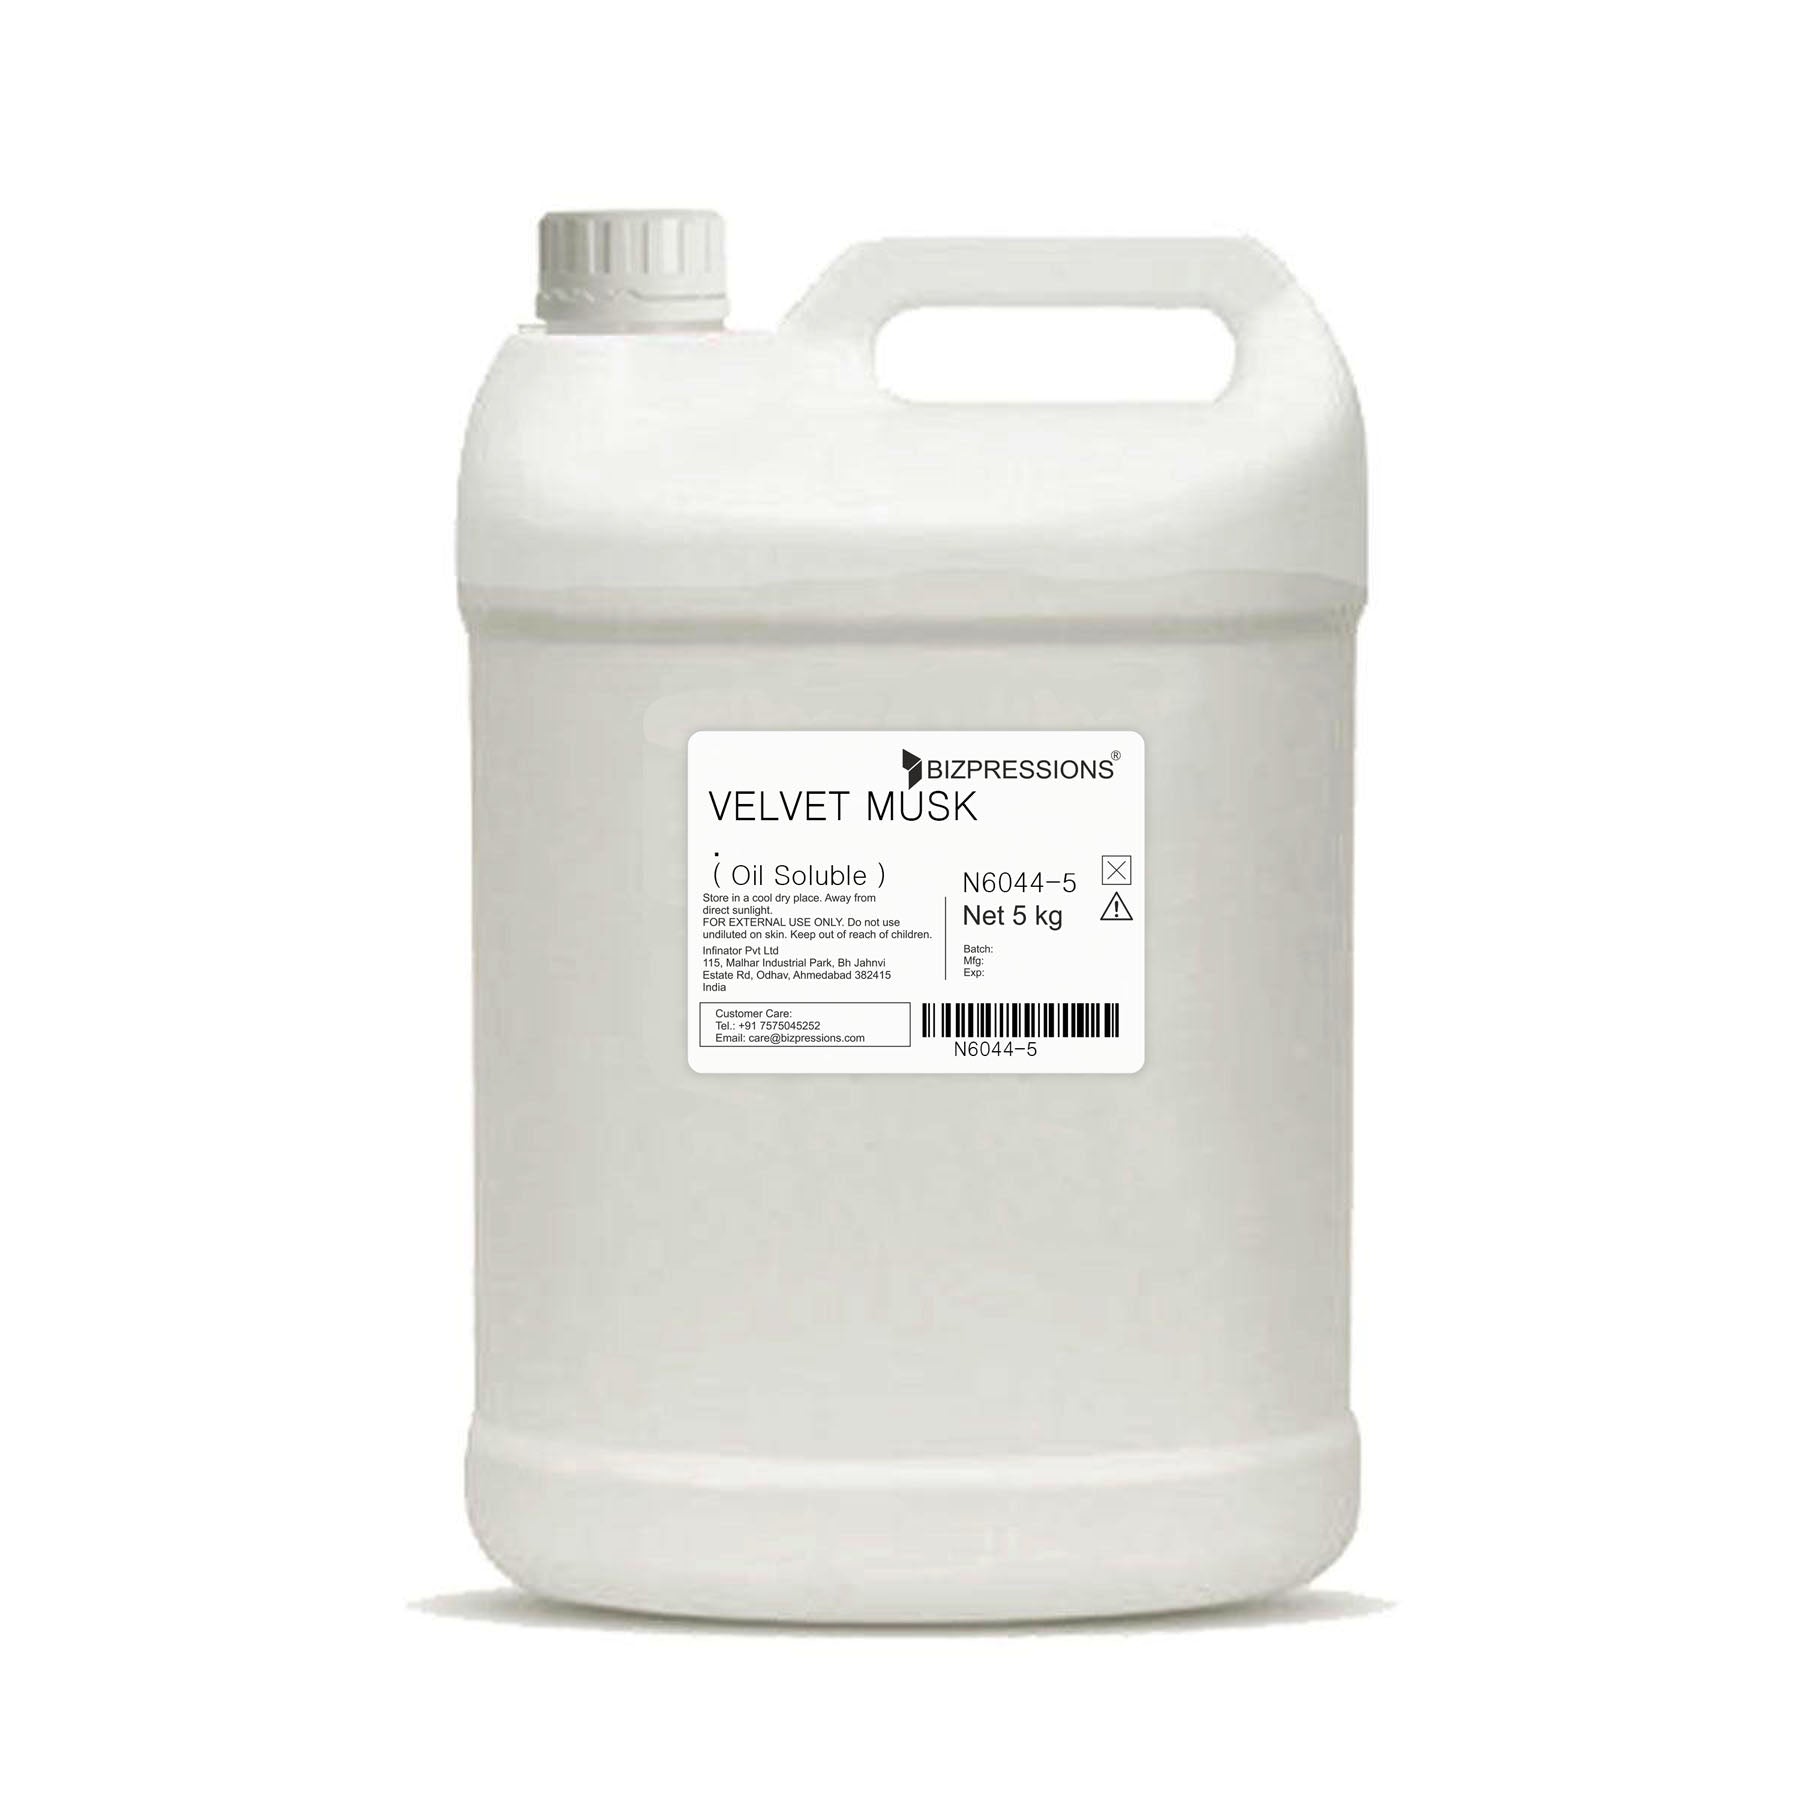 VELVET MUSK - Fragrance ( Oil Soluble ) - 5 kg